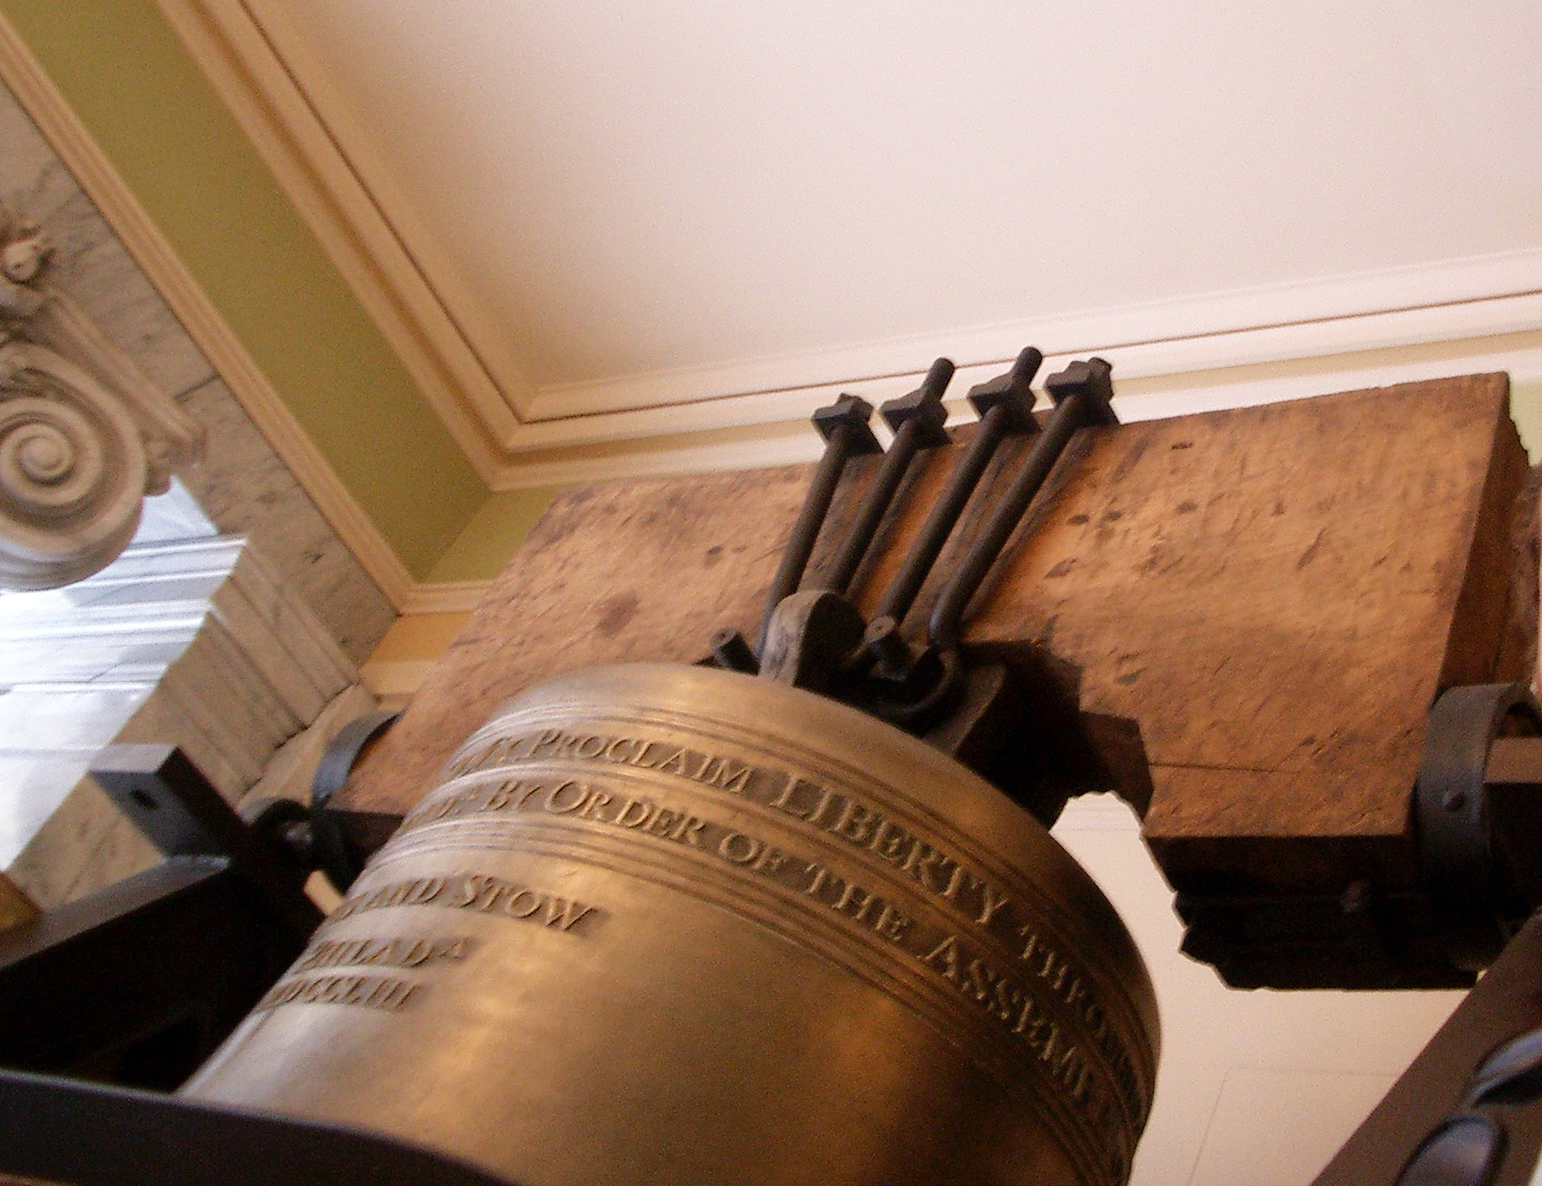 Utah Liberty Bell replica